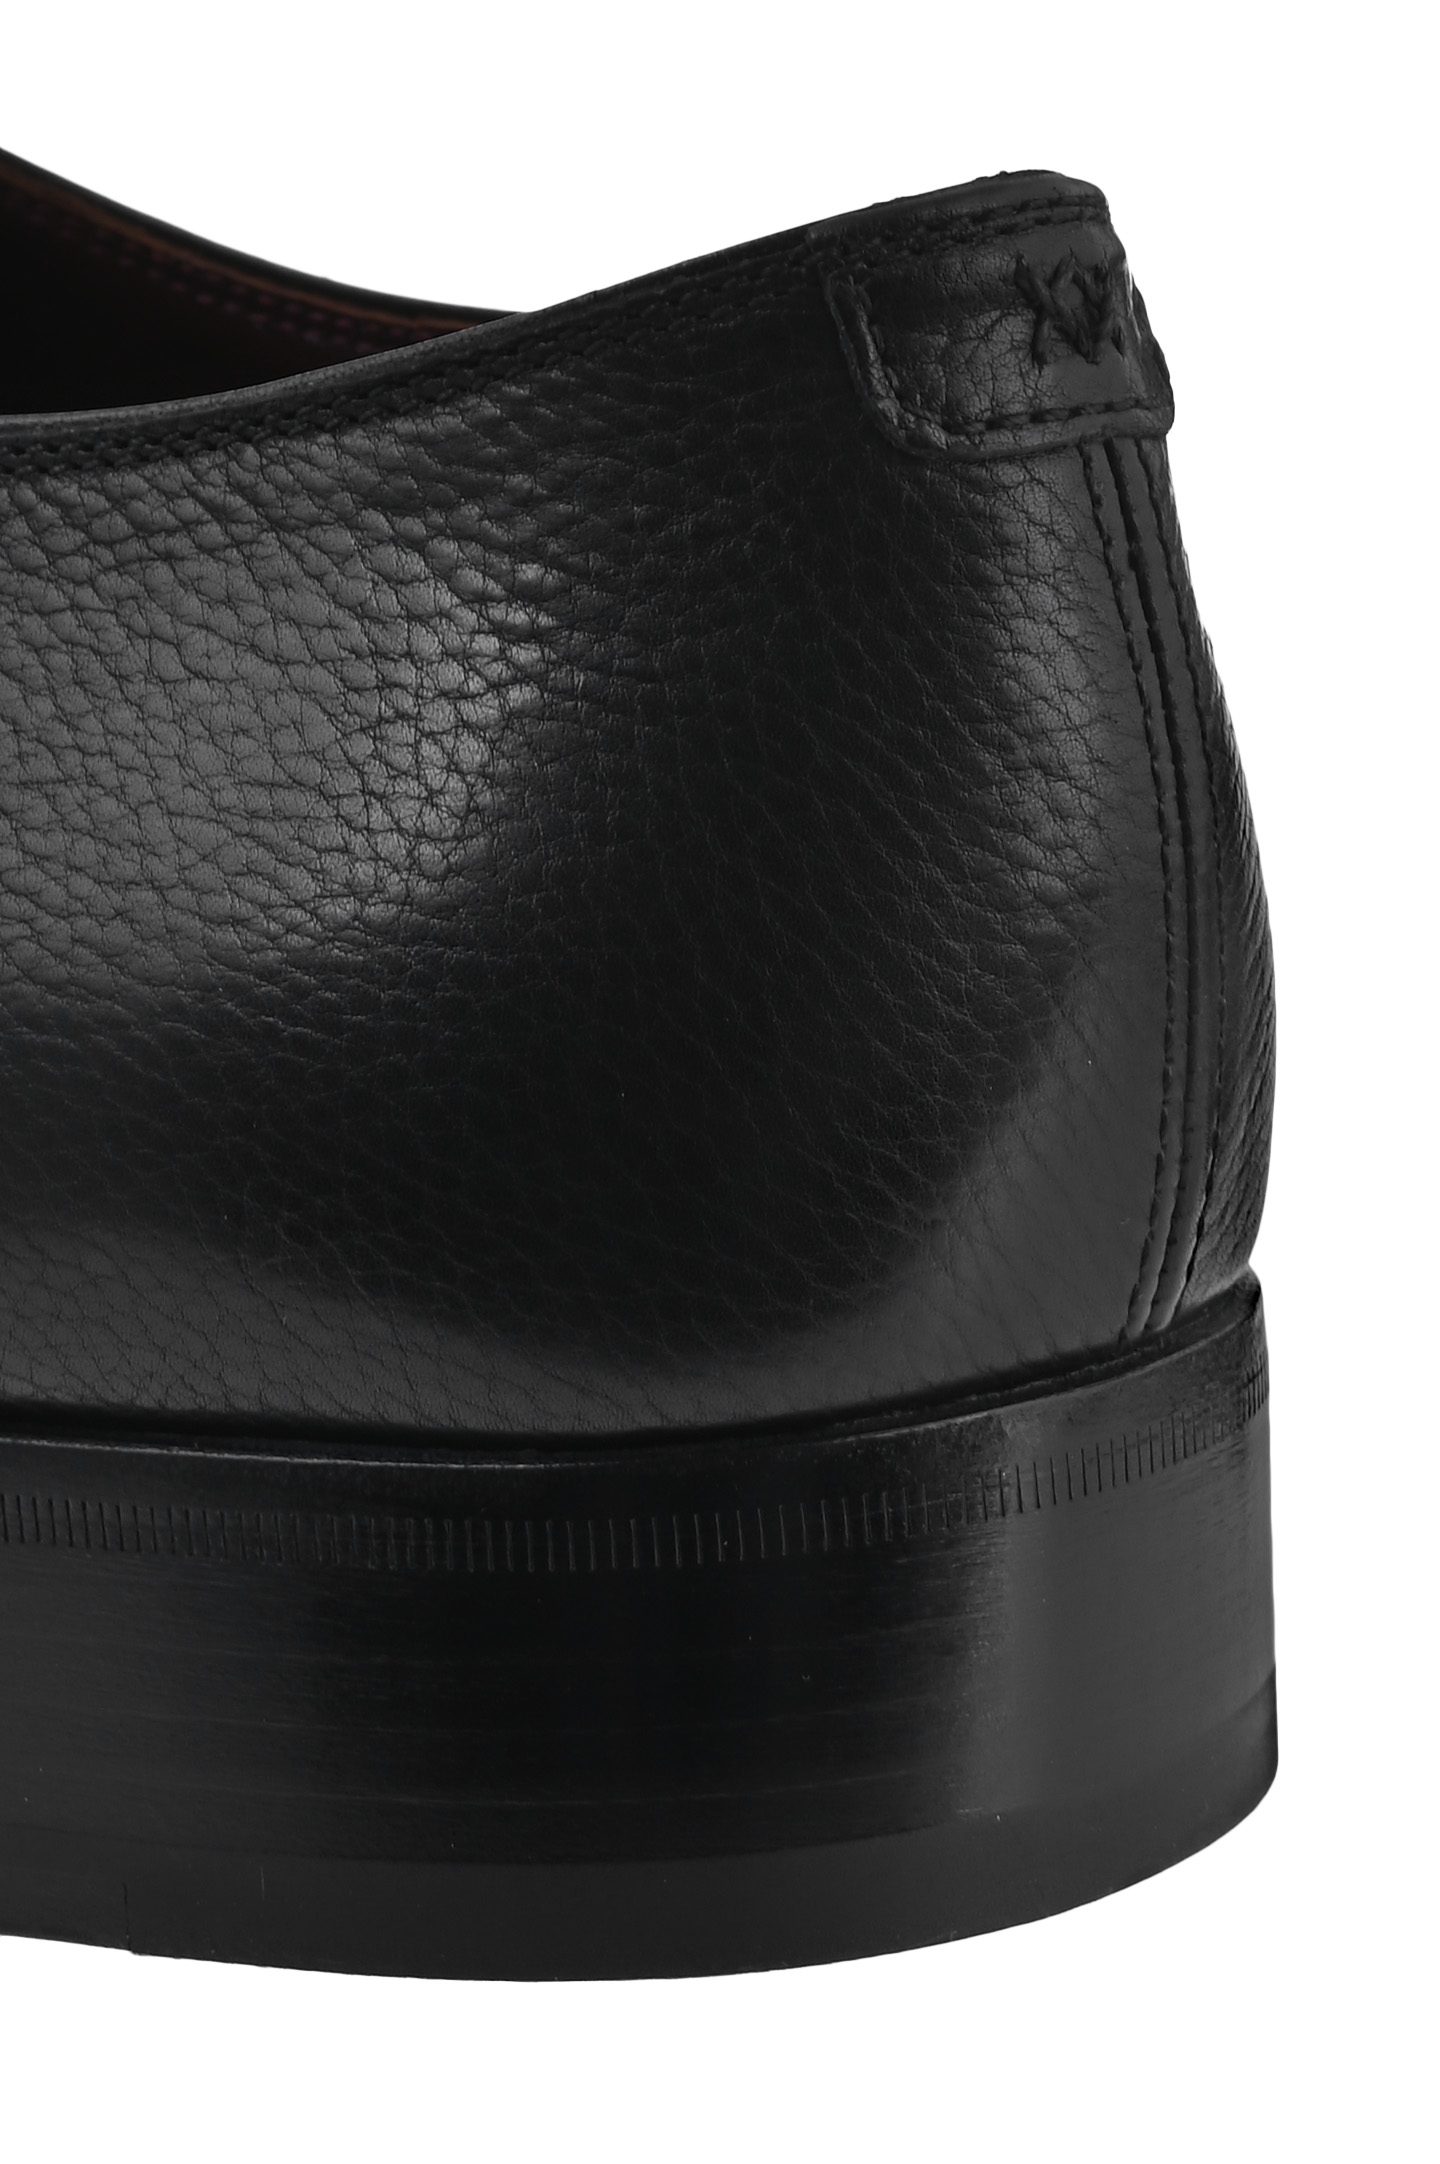 Туфли ARTIOLI 06S134/BIS, цвет: Черный, Мужской